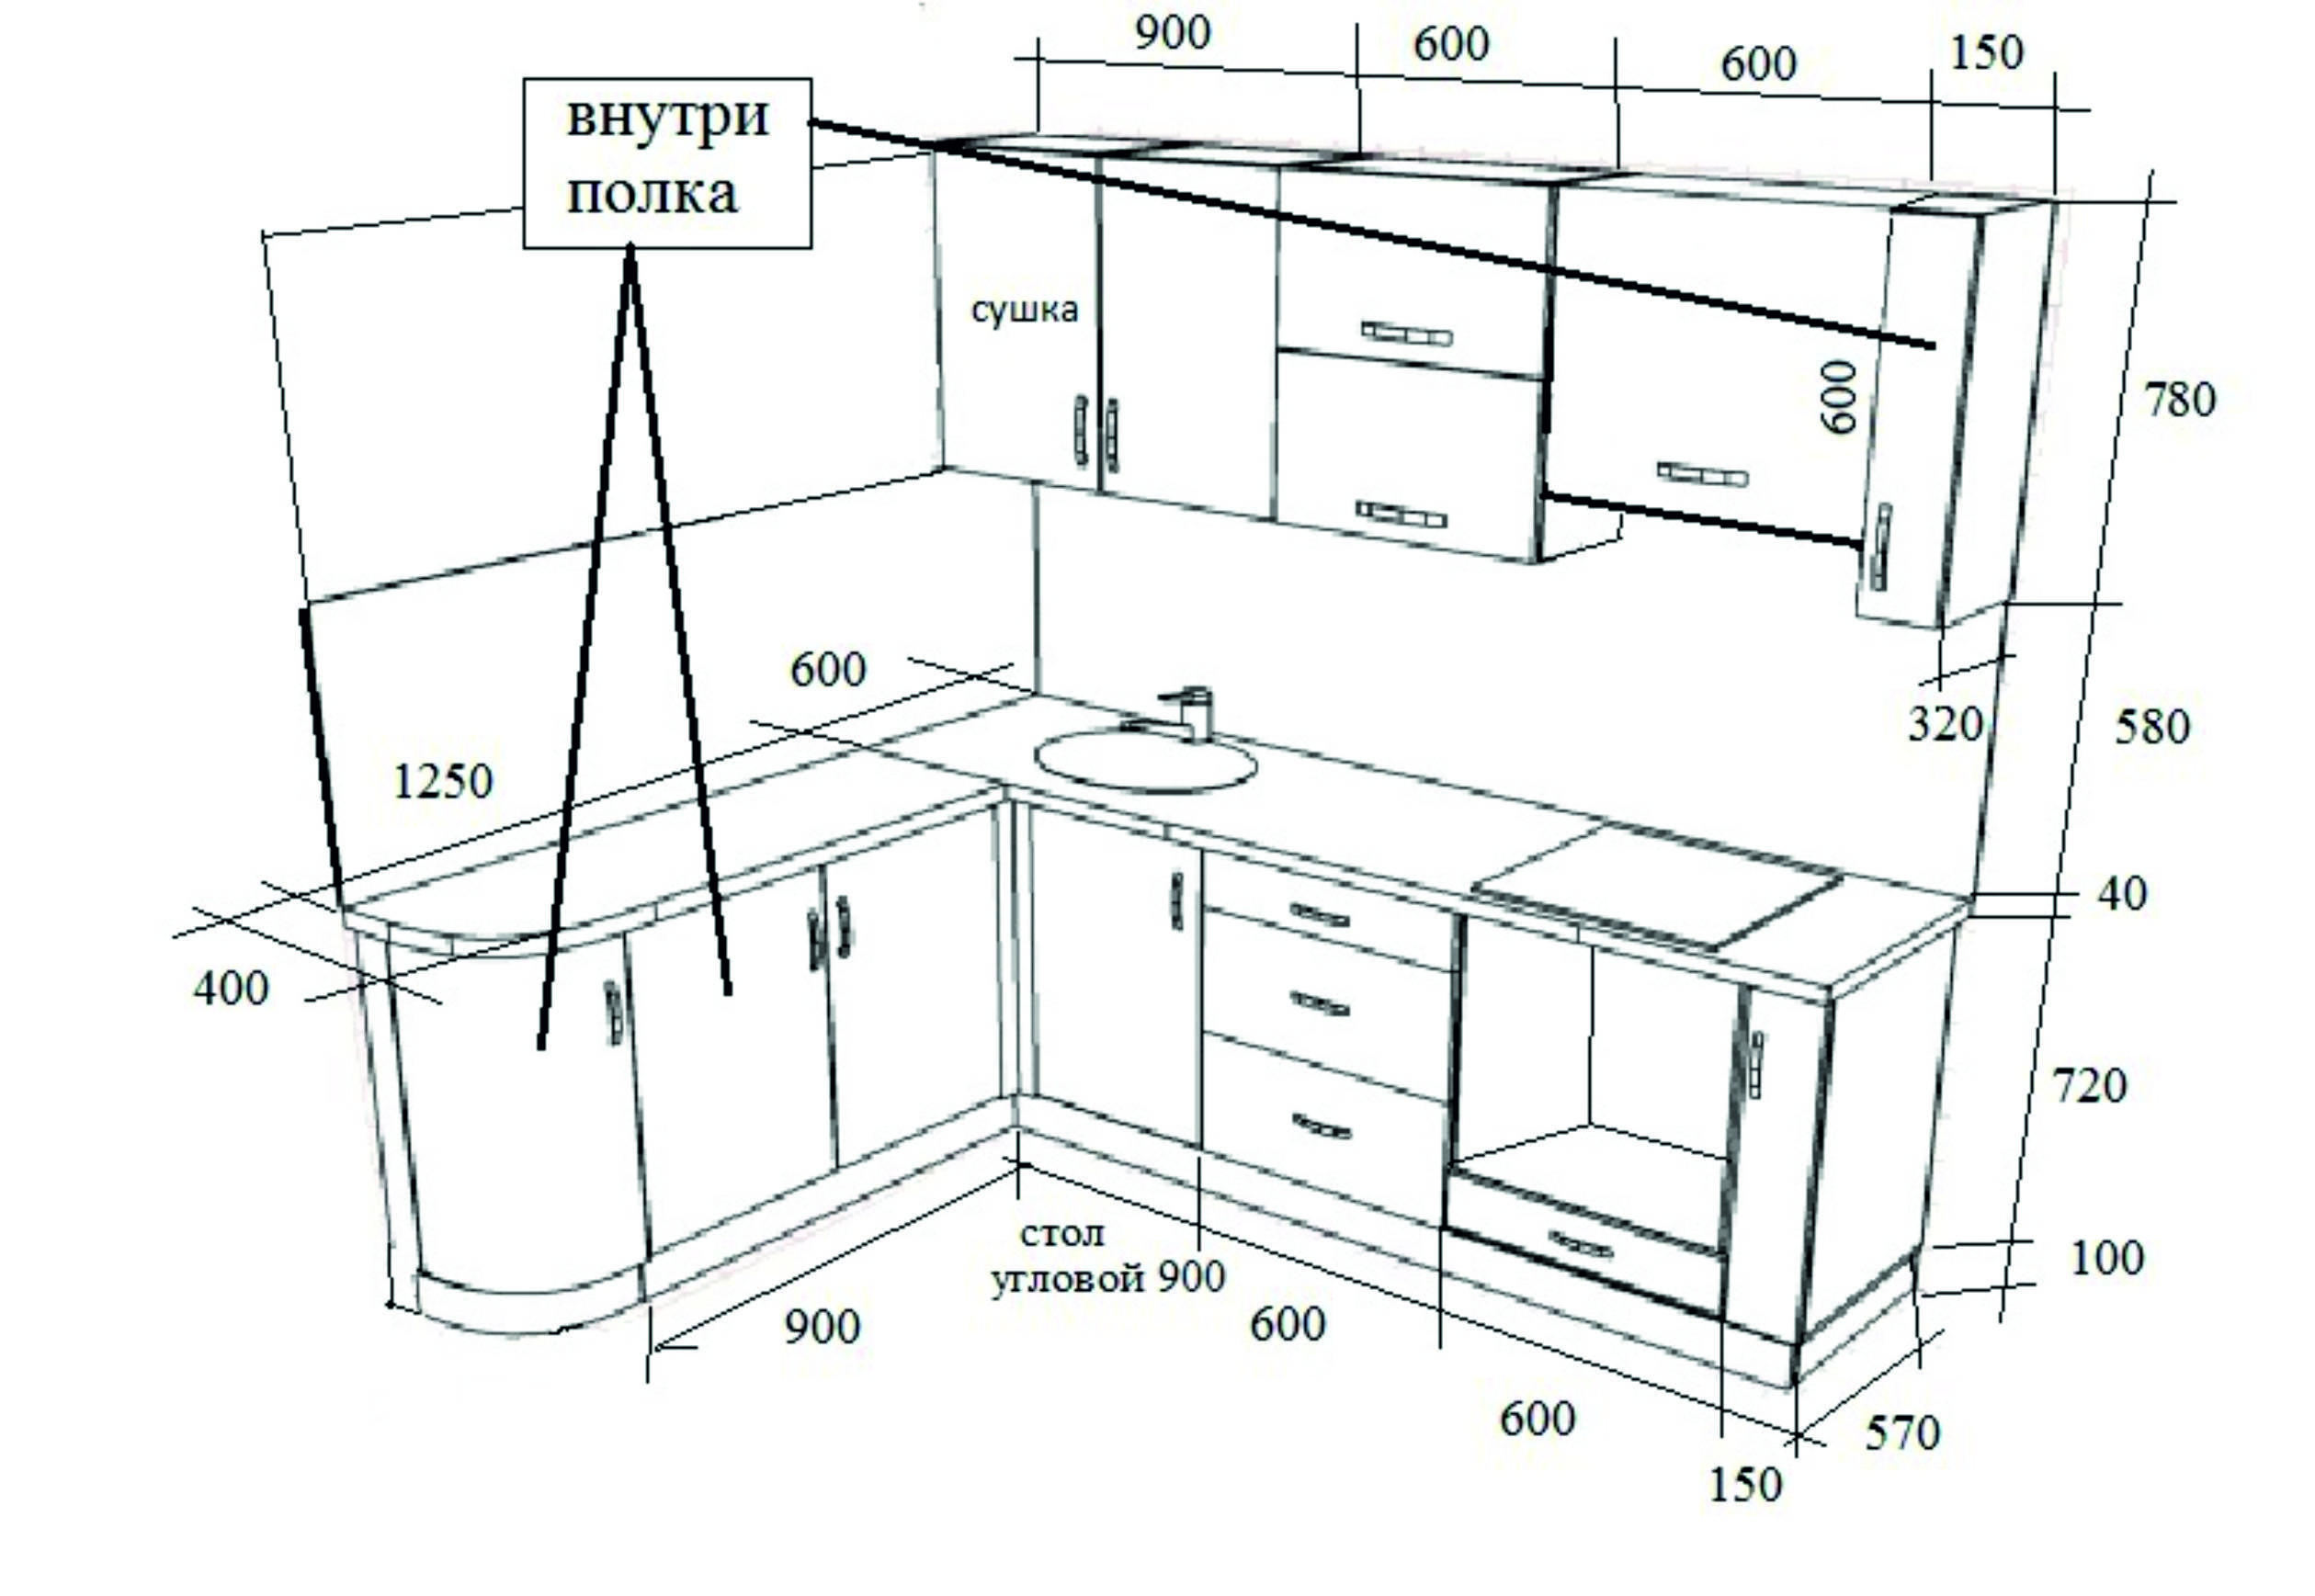 Размеры кухонных шкафов — глубина,ширина,высота модулей